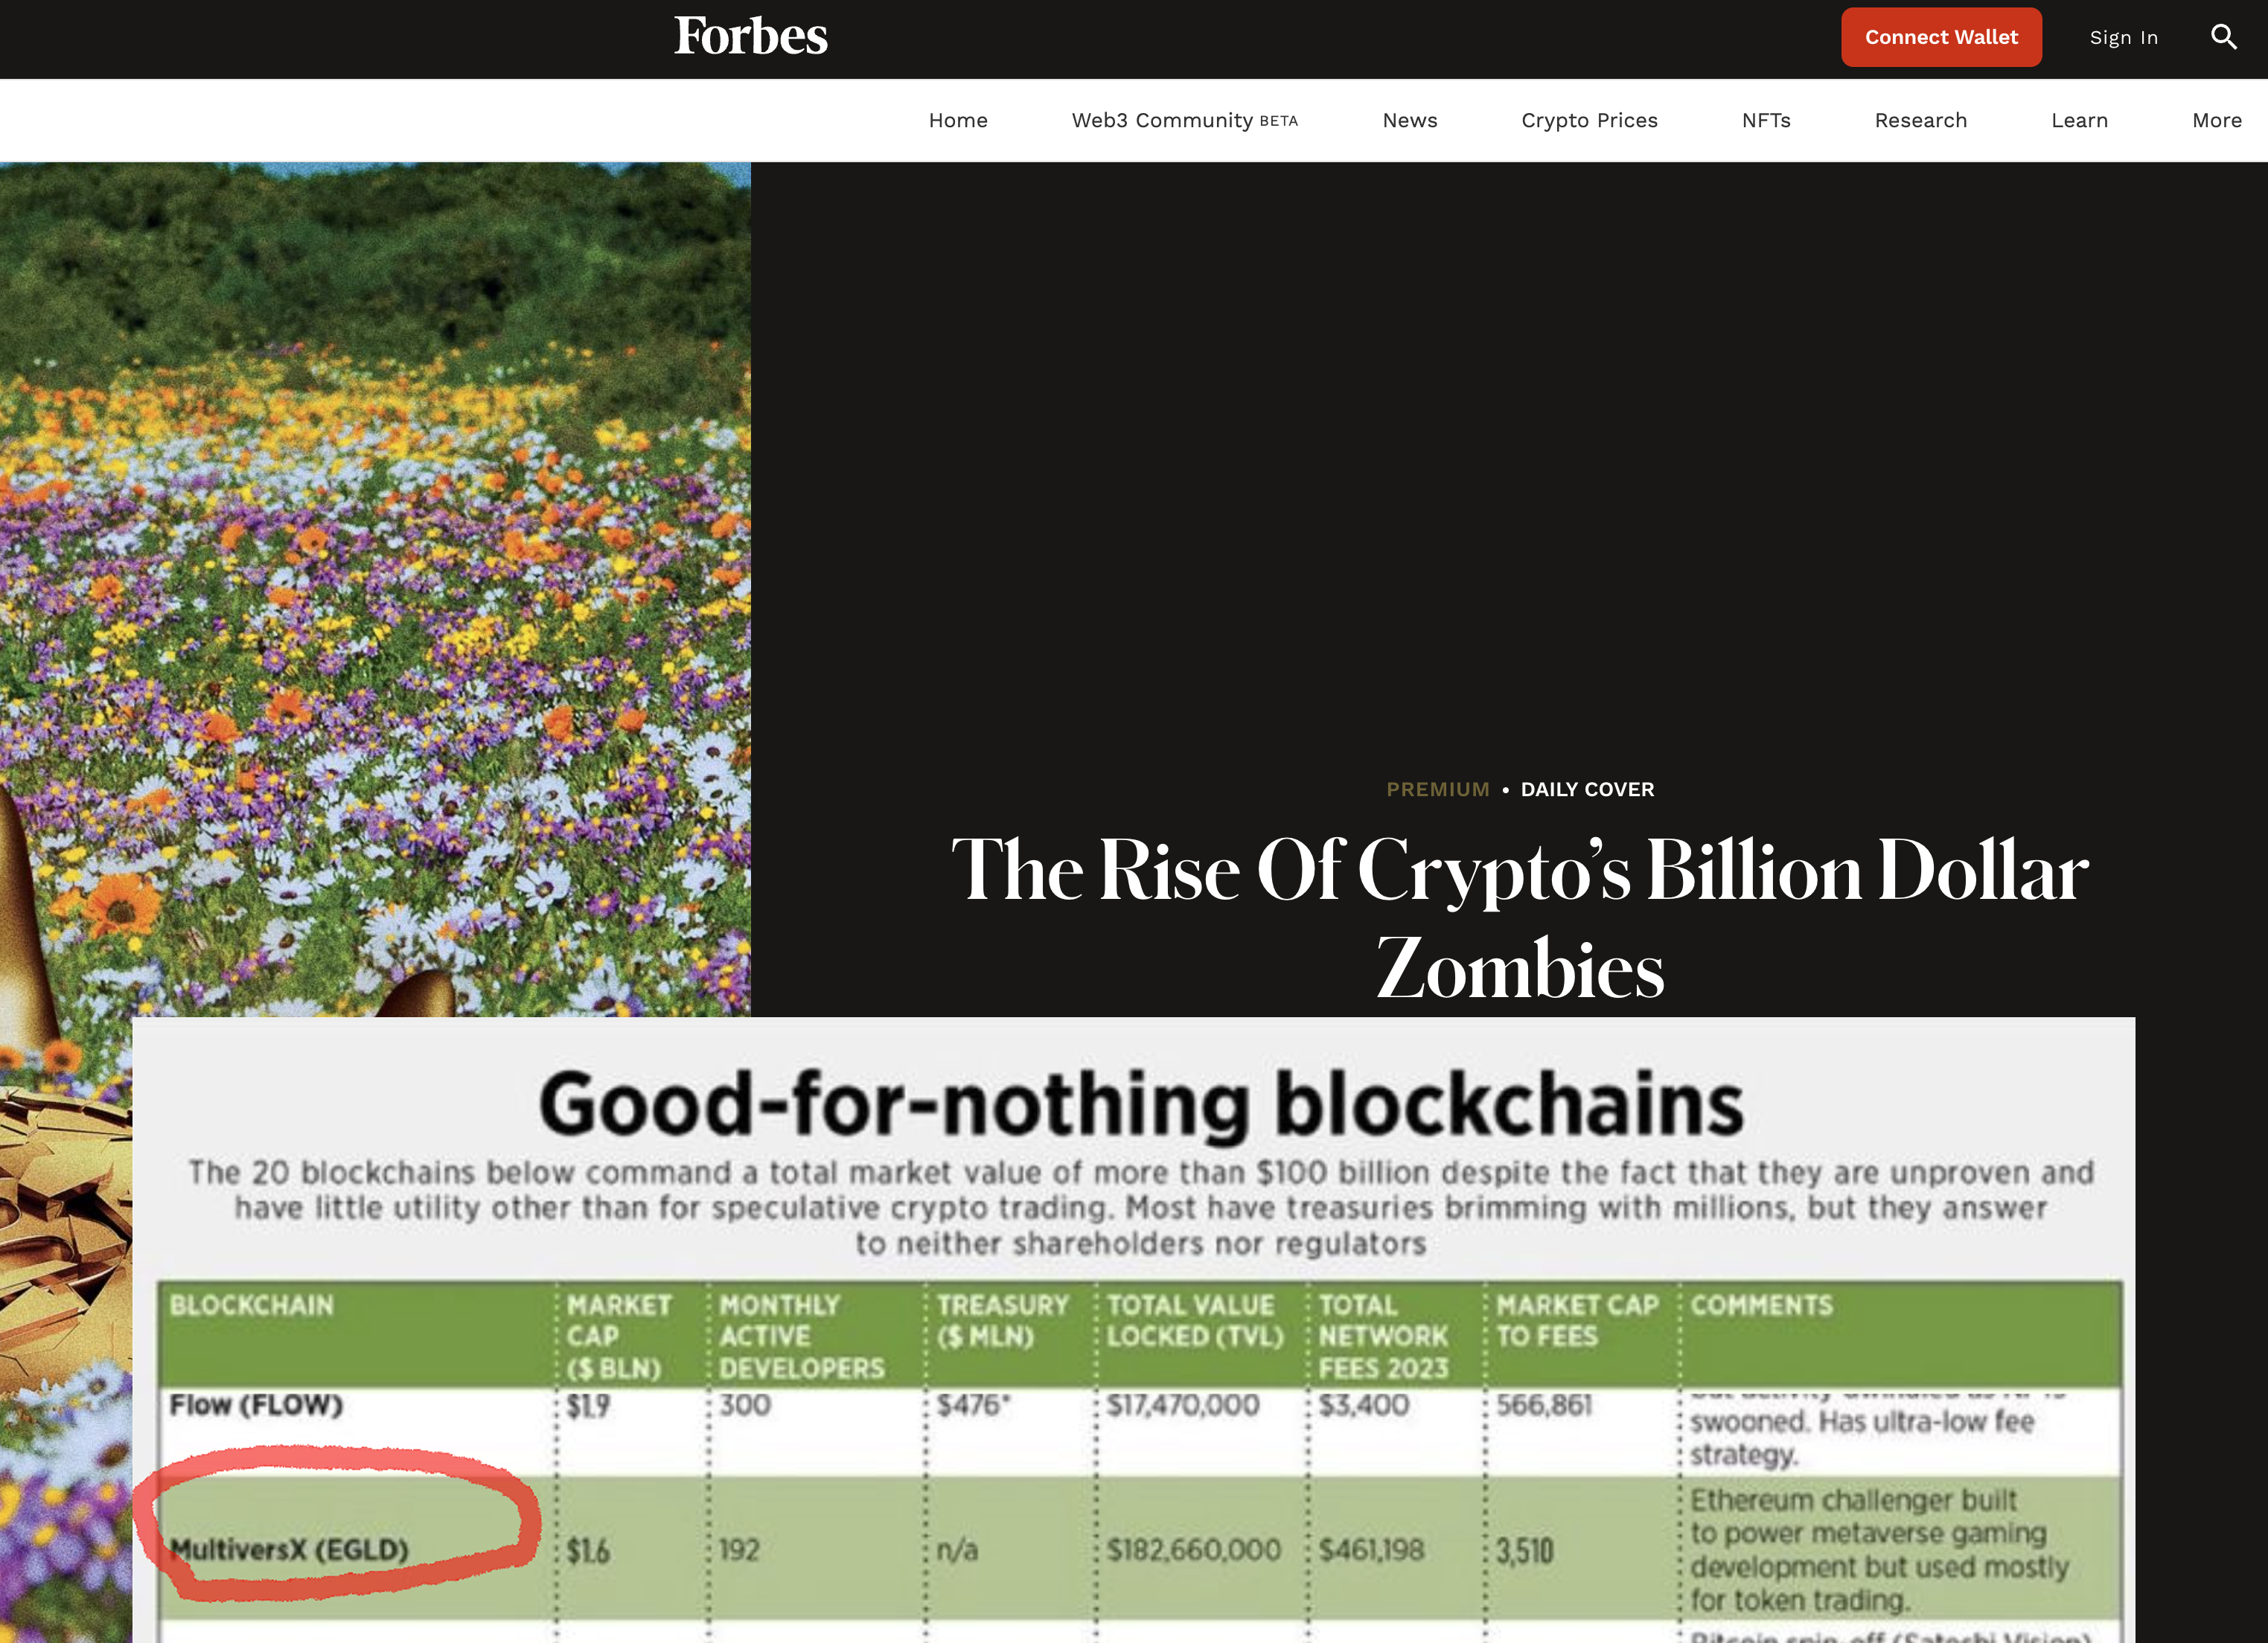 Proiectul MultiversX din Sibiu (fostul Elrond), inclus de Forbes SUA într-un top 20 global al „blockchain-urilor care nu sunt bune pentru nimic”, respectiv „au o utilitate redusă înafara tradingului speculativ de crypto”. Update. Reacţia MultiversX: Sunt nişte afirmaţii profund eronate